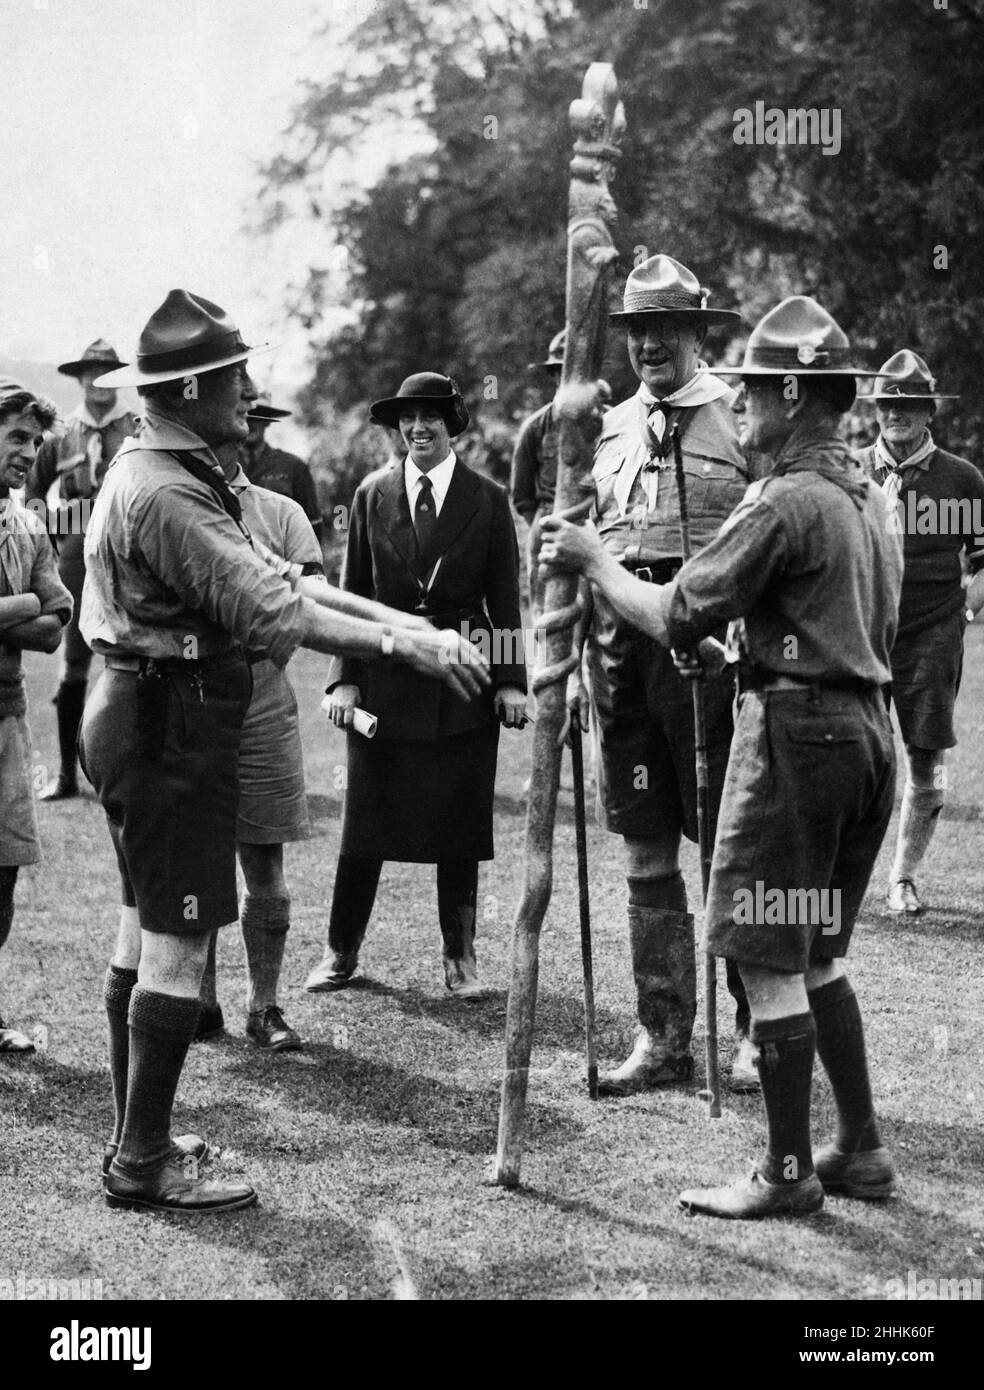 Sir Robert Baden-Powell, fondateur du mouvement des jeunes Scouts, remet un totem souvenir à un délégué sud-africain au Jamboree Scout mondial 3rd, tenu au Parc Arrowe à Upton, Merseyside. Le jamboree a fêté l'anniversaire 21st du Scoutisme pour les garçons et du mouvement scout.5th août 1929. Banque D'Images